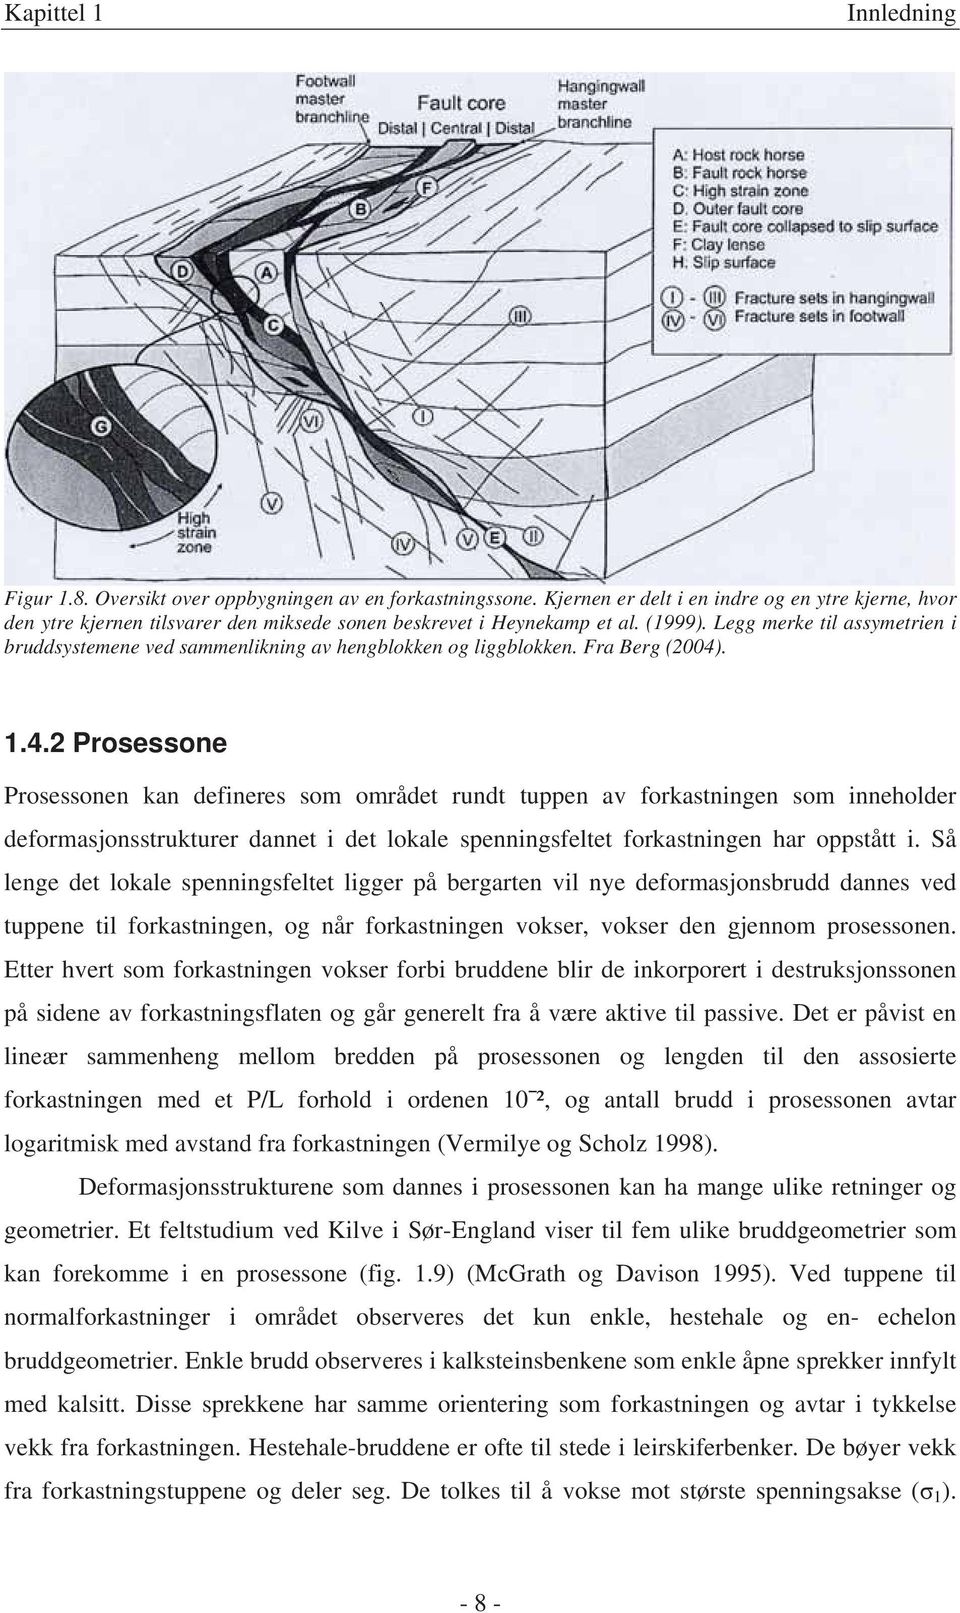 Legg merke til assymetrien i bruddsystemene ved sammenlikning av hengblokken og liggblokken. Fra Berg (2004)